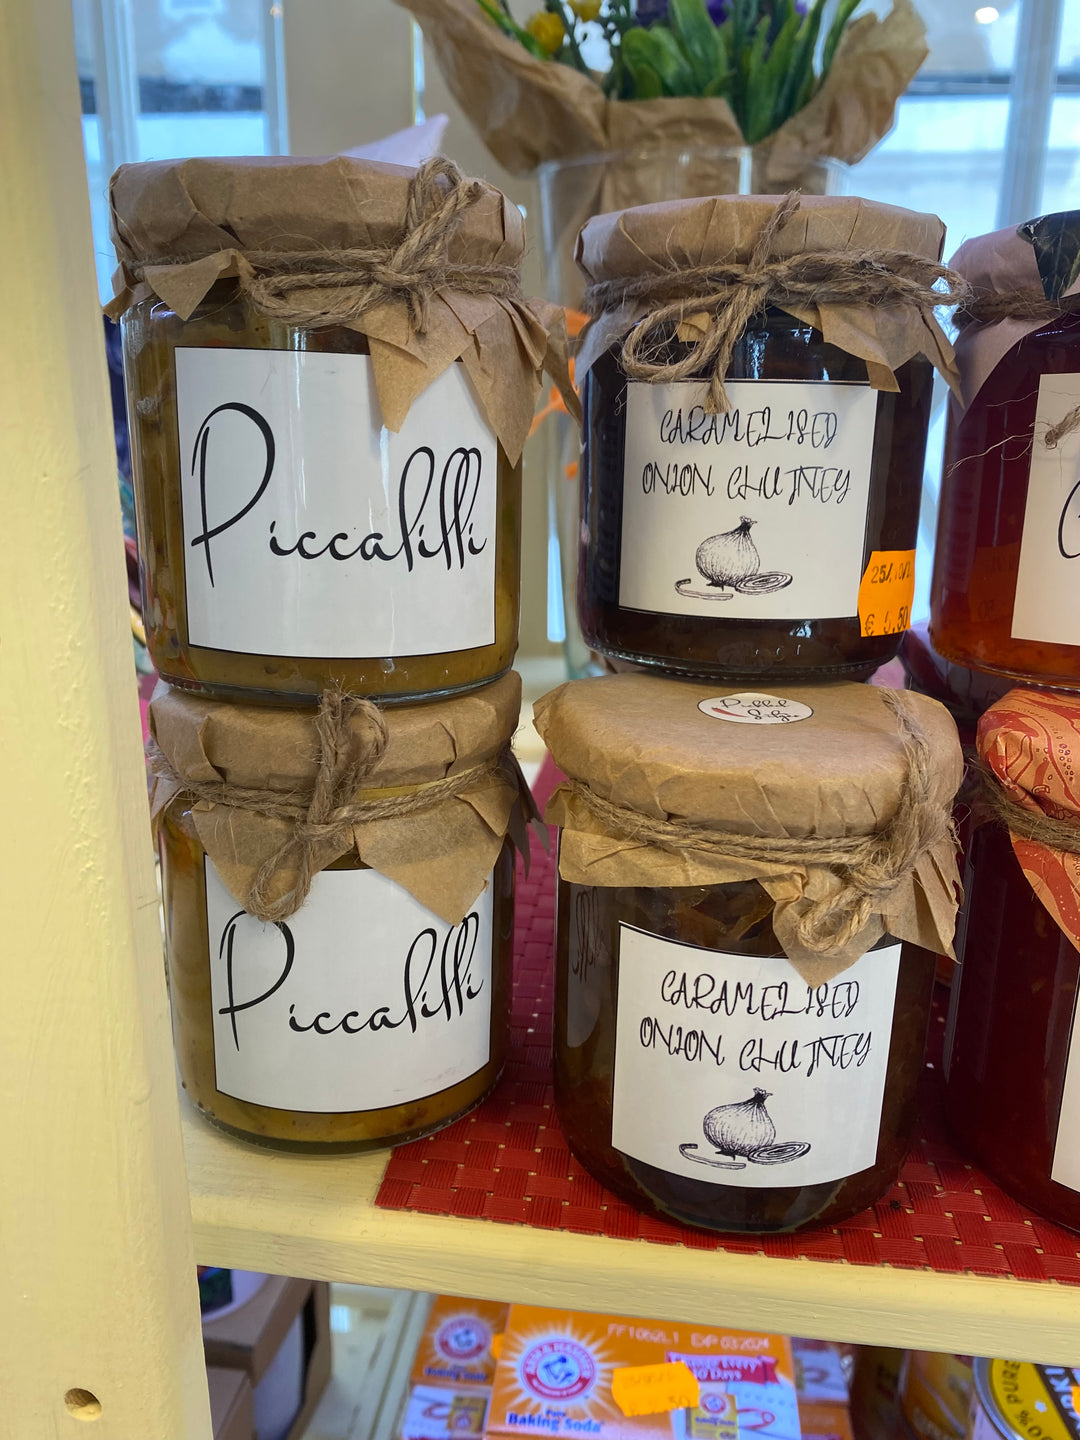 Pickled Sitges Piccalilli